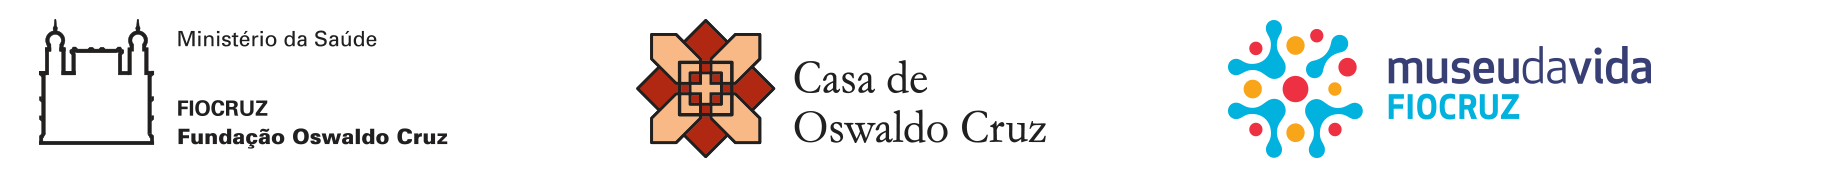 Realização Fiocruz, casa de Oswaldo Cruz e Museu da Vida